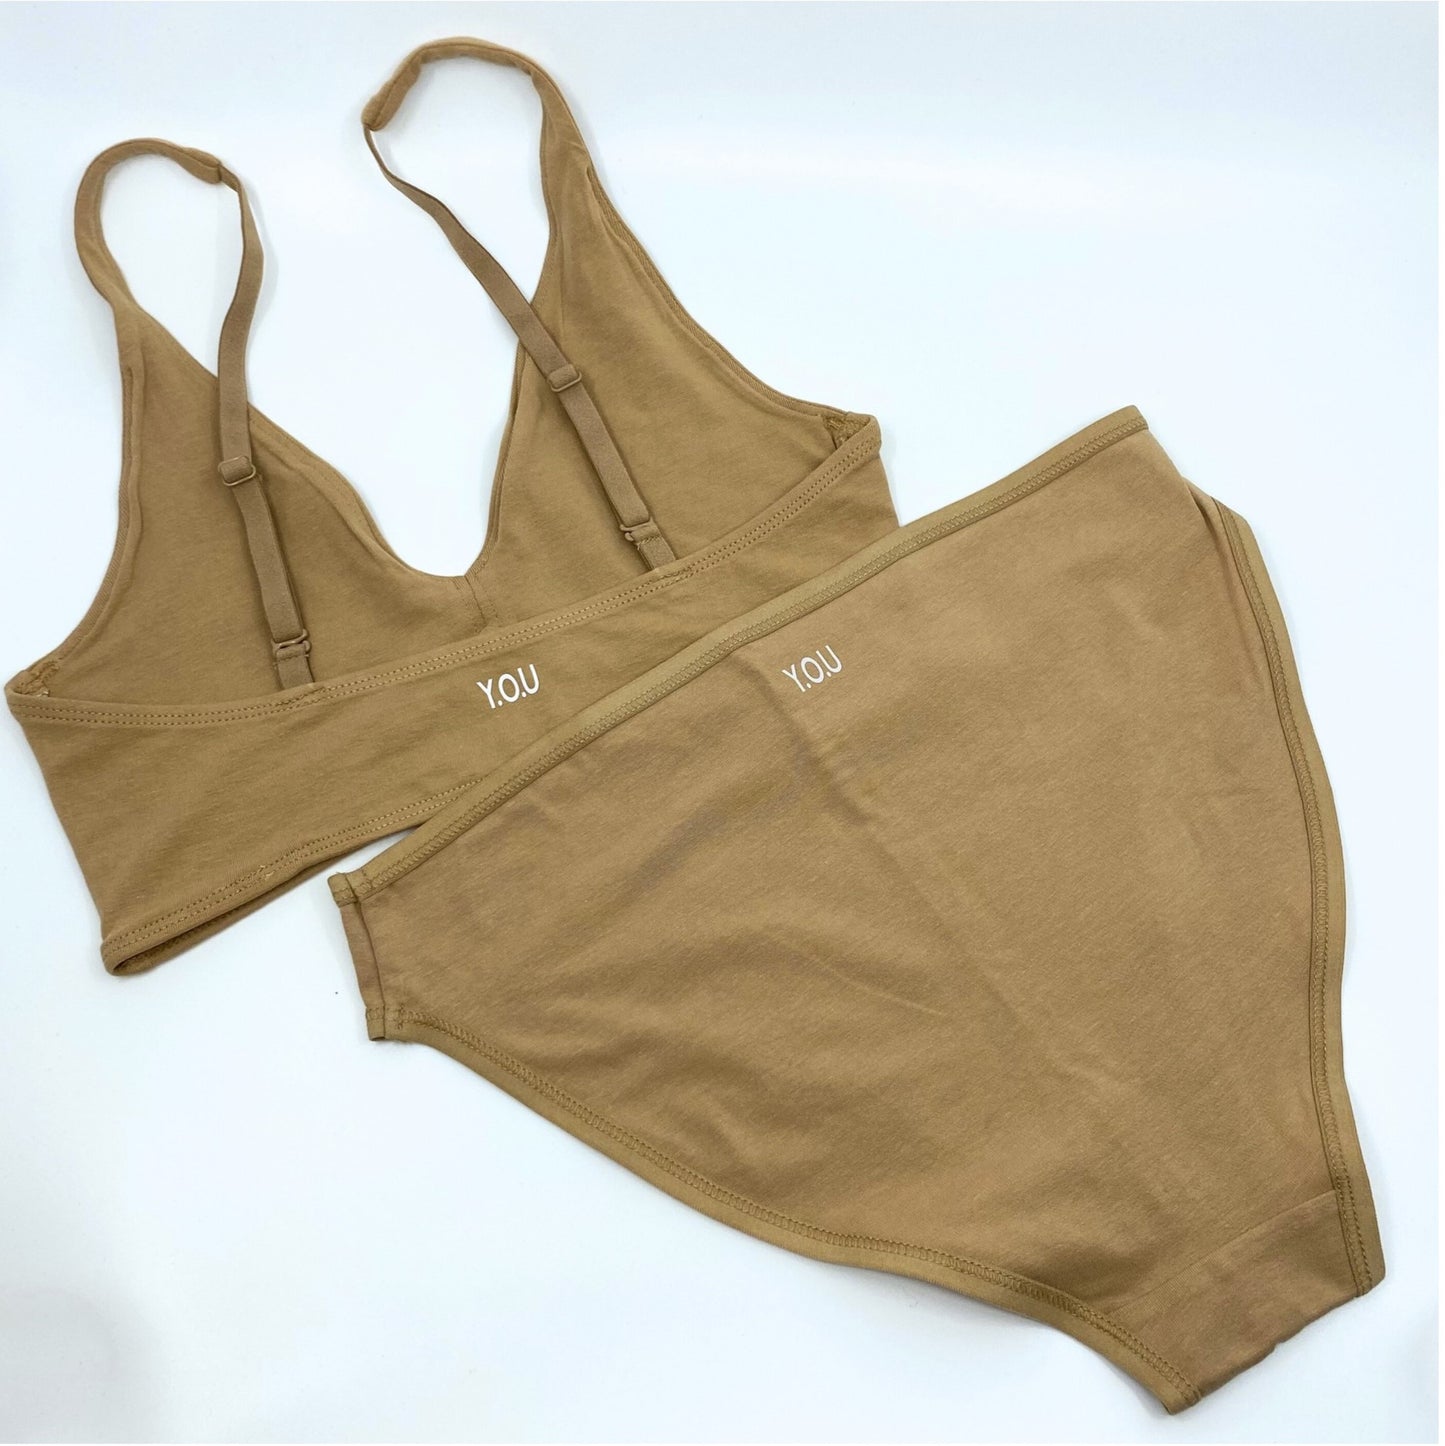 Women's organic cotton matching bralette and mid-rise bikini set - Almond (light nude)